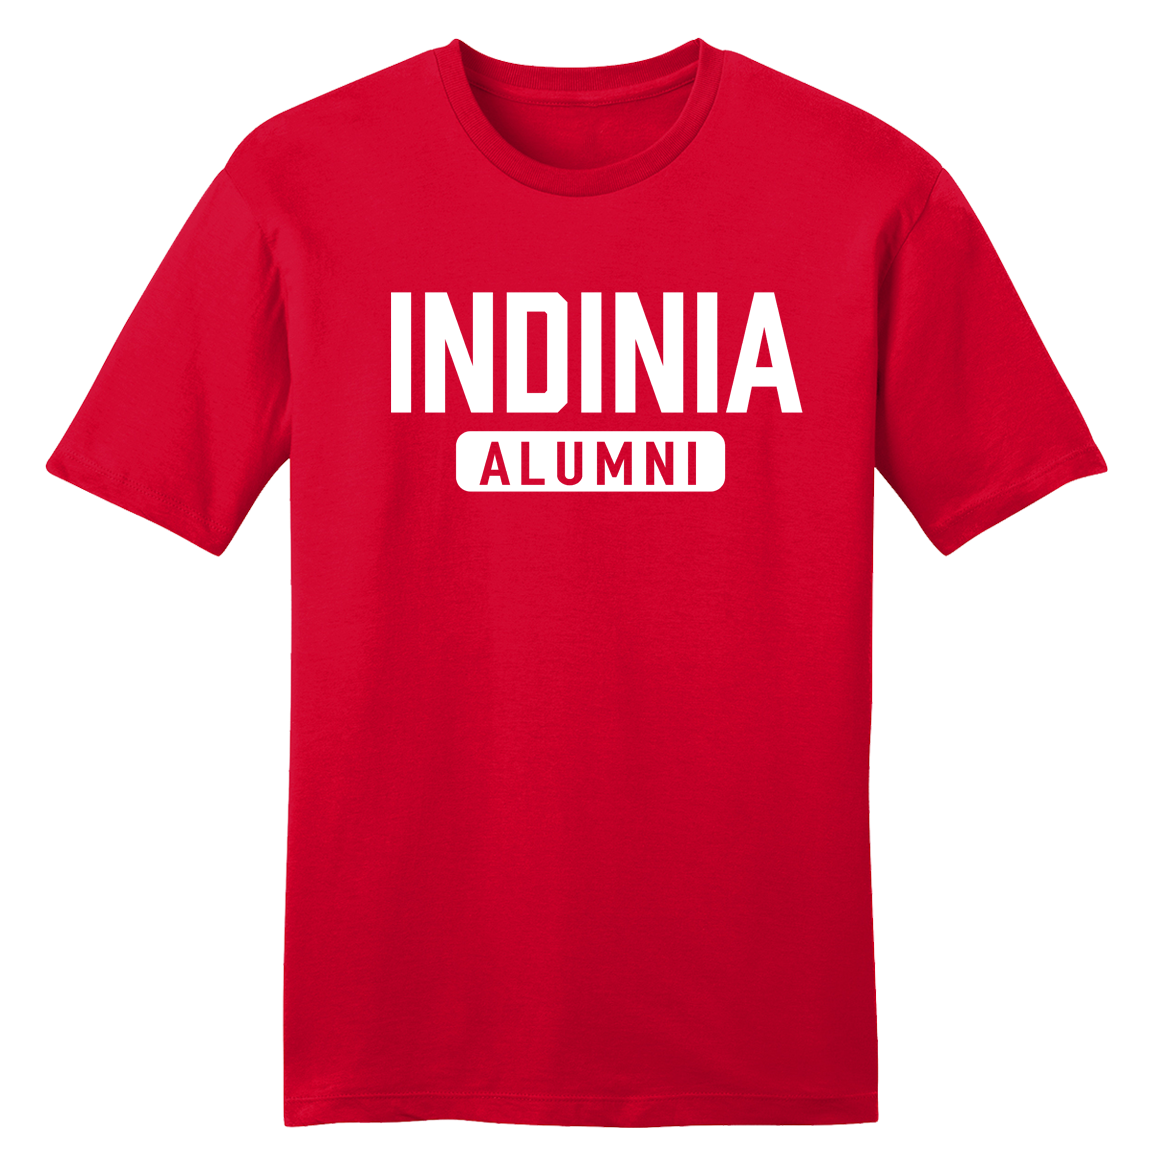 Indinia Alumni - Cincy Shirts